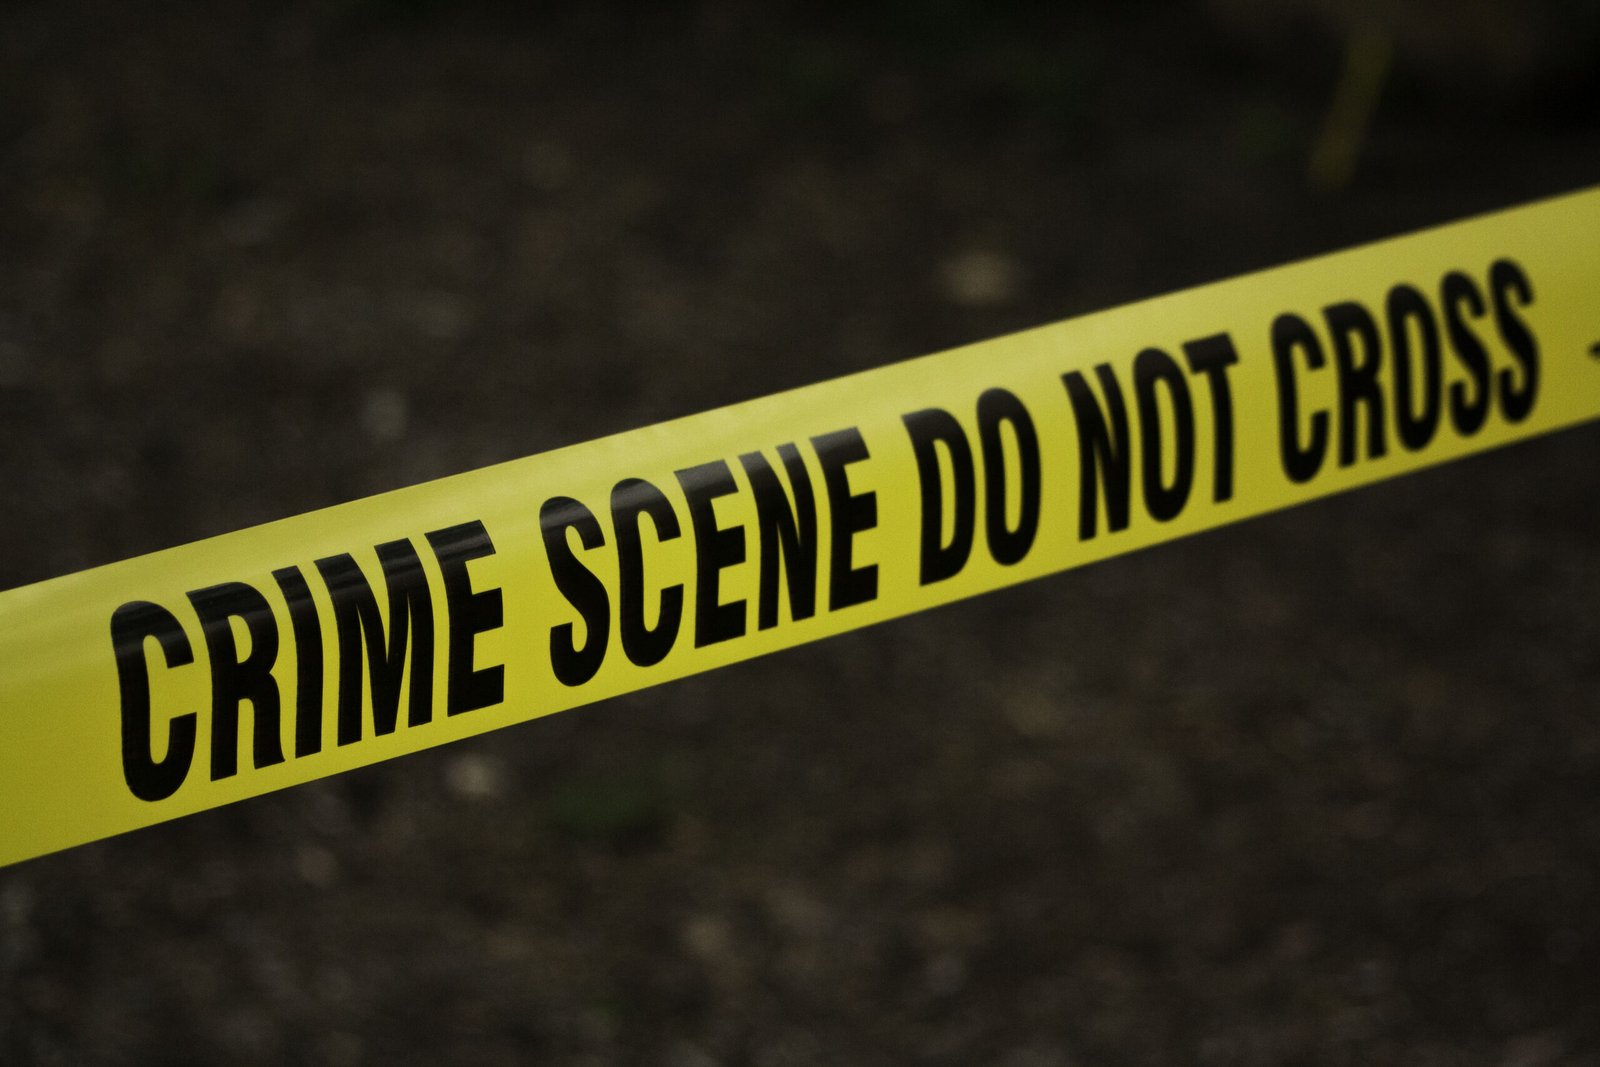 crime scene do not cross | Report Focus News